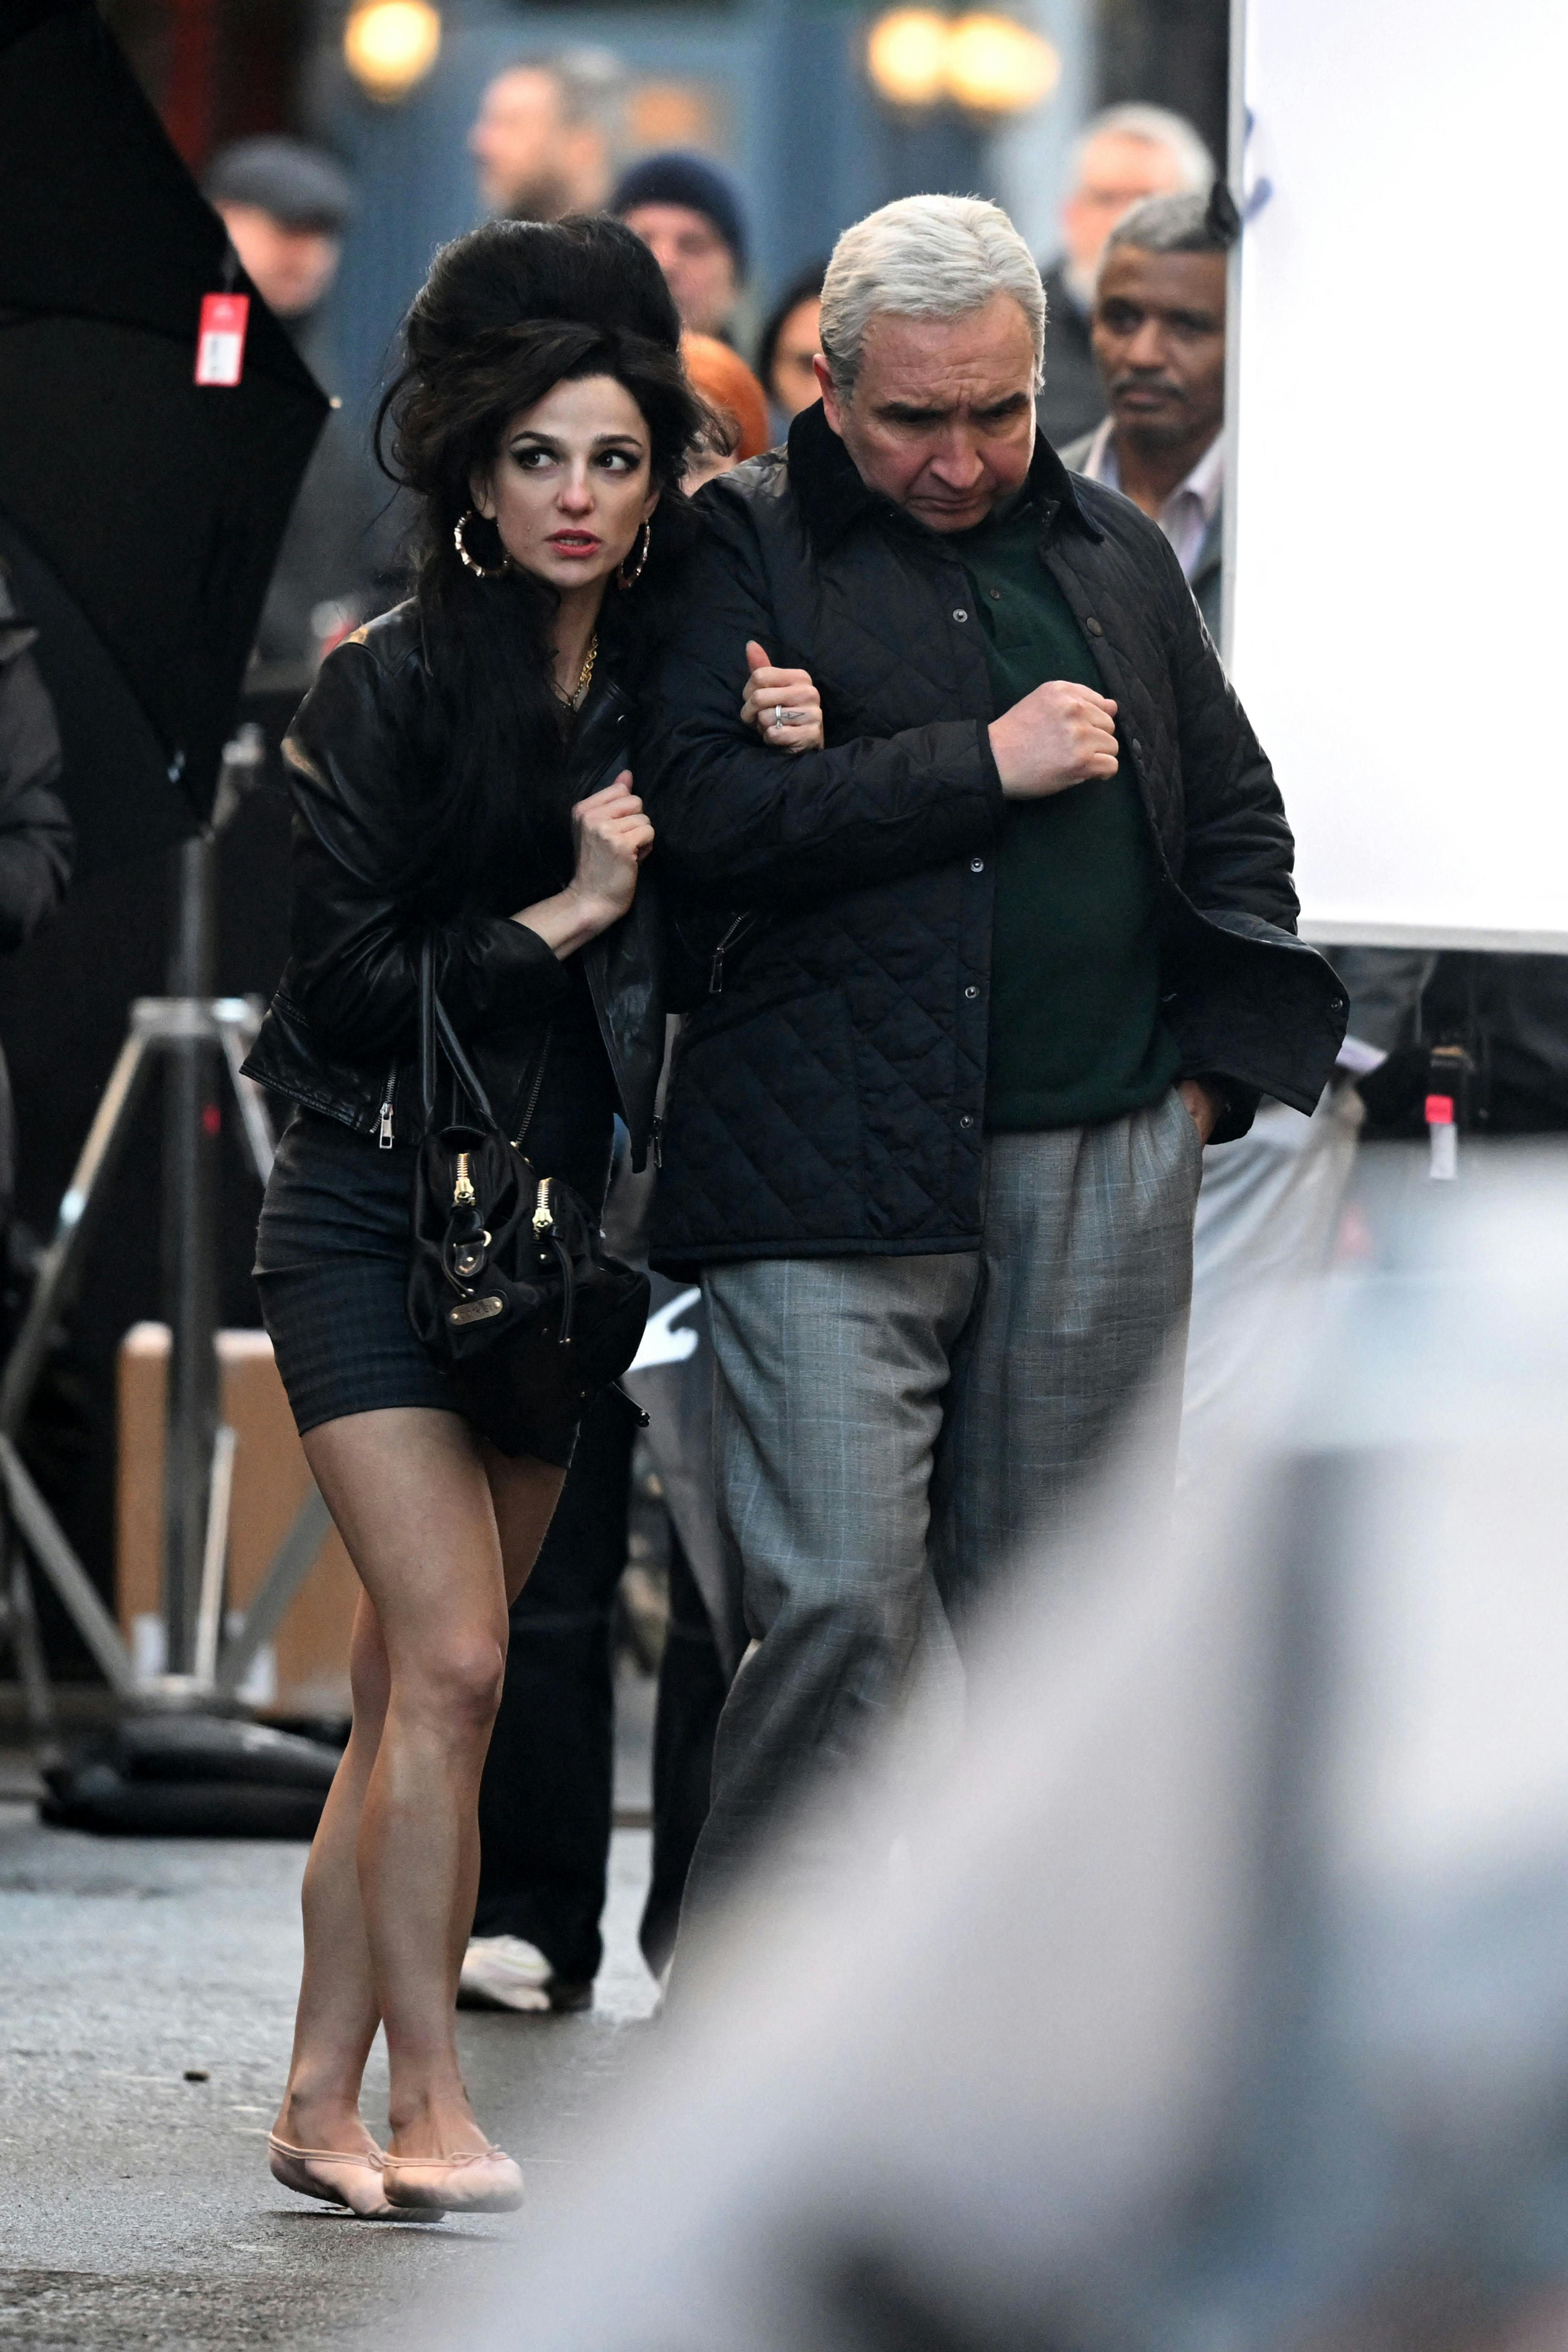 Amy Winehouse-biografen er i fuld gang med at blive optaget i Londons gader. Her er Marisa Abela ledsaget af den britiske skuespiller Eddie Marsan, der spiller stjernens far.&nbsp;
